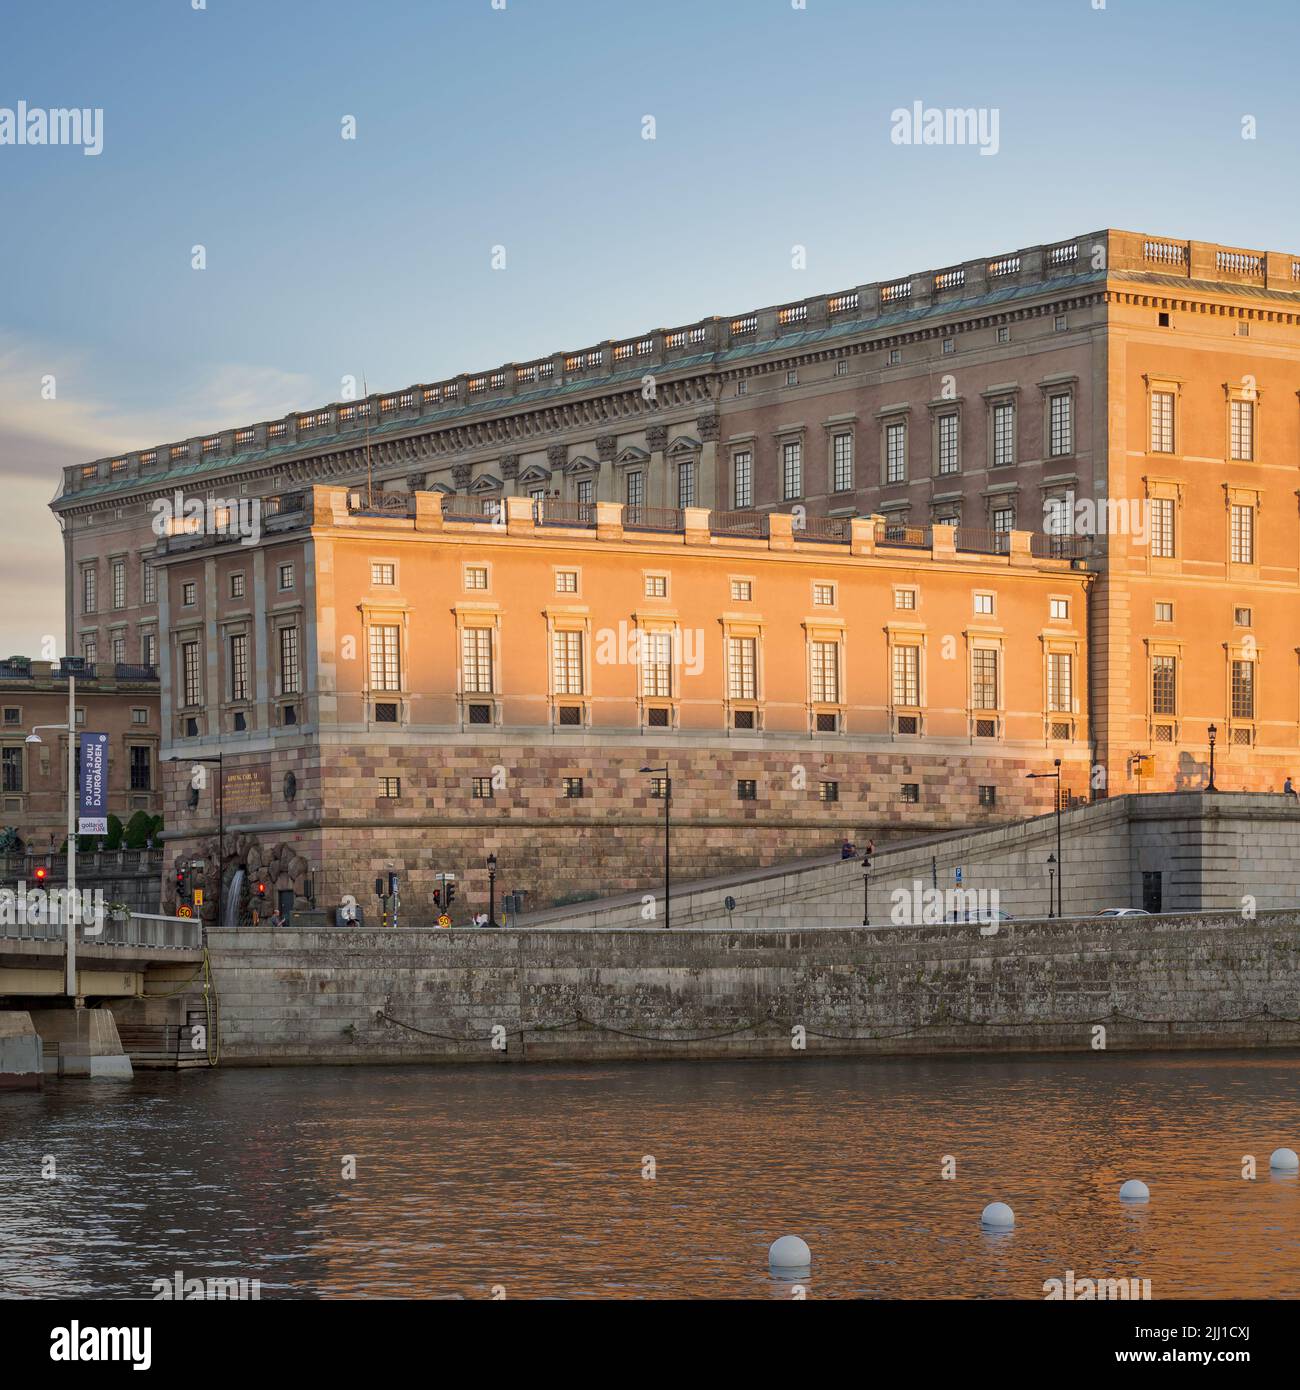 Fachada lateral del Palacio Real de Estocolmo, Suecia: Stockholms Slott o Kungliga Slottet, residencia oficial del Rey, situada en la Ciudad Vieja, o Gamla Stan Foto de stock